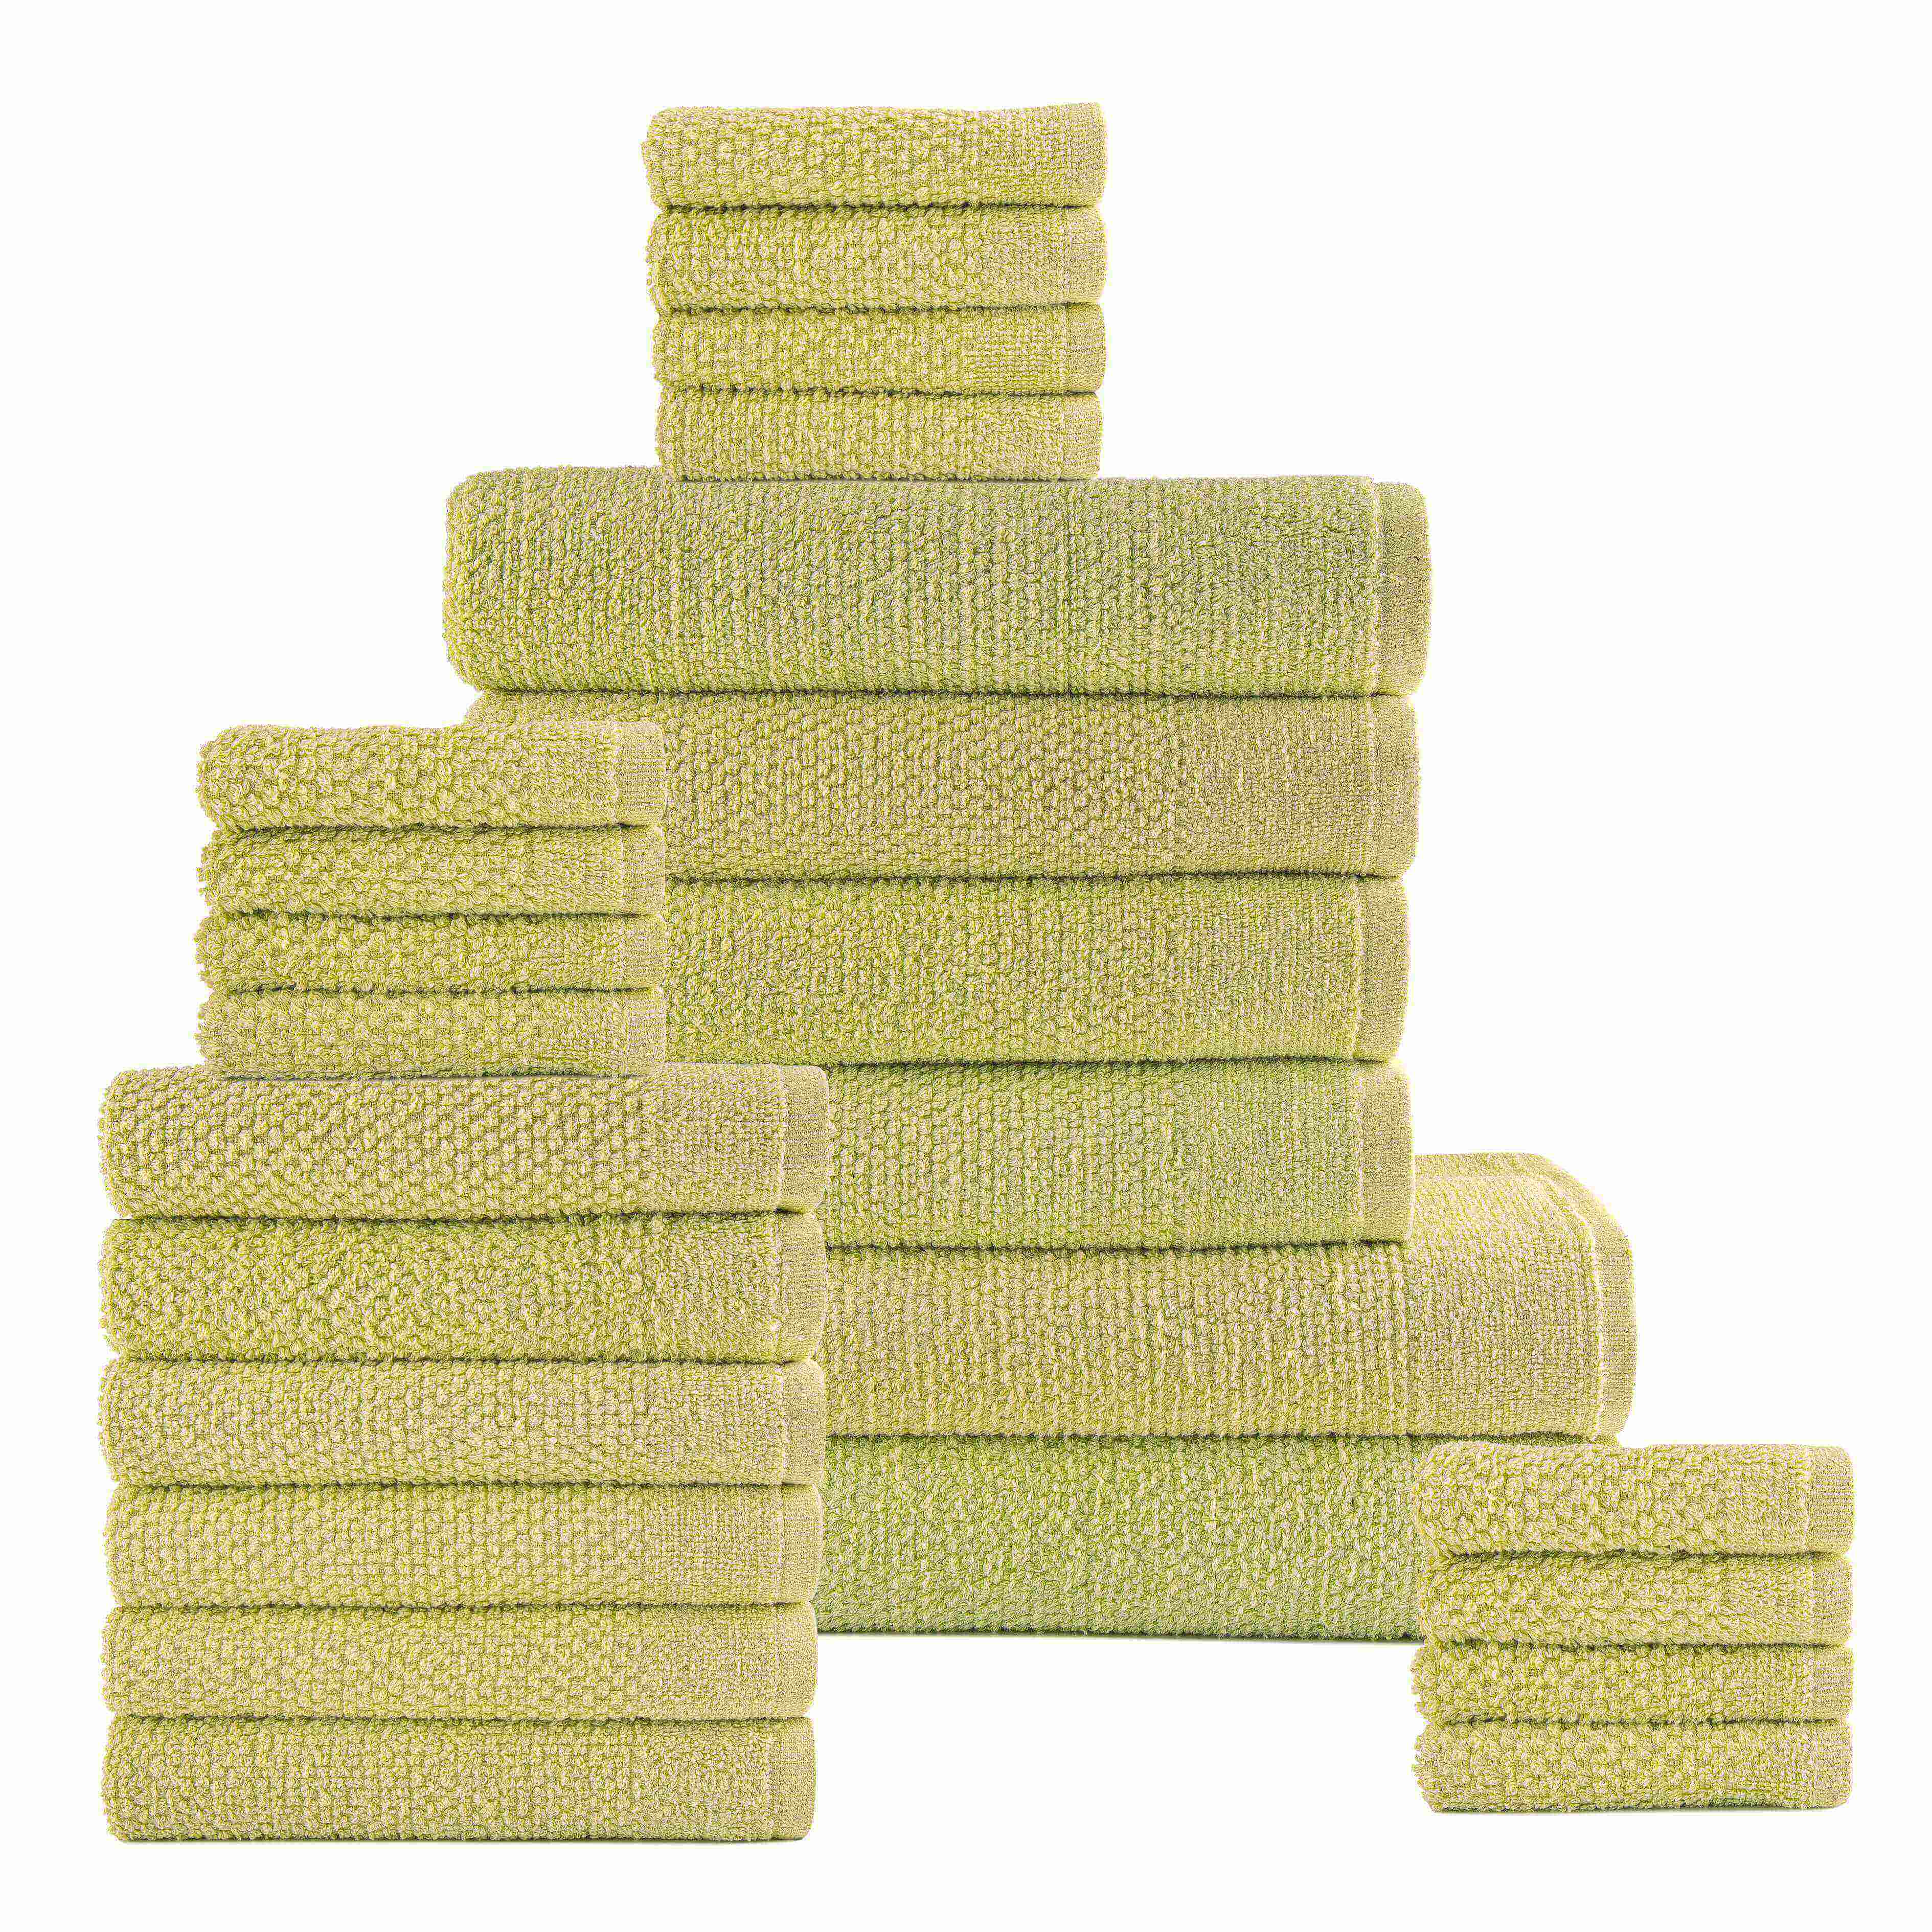 Spearmint Colour of 24 Piece Popcorn Cotton Bath Towel Set